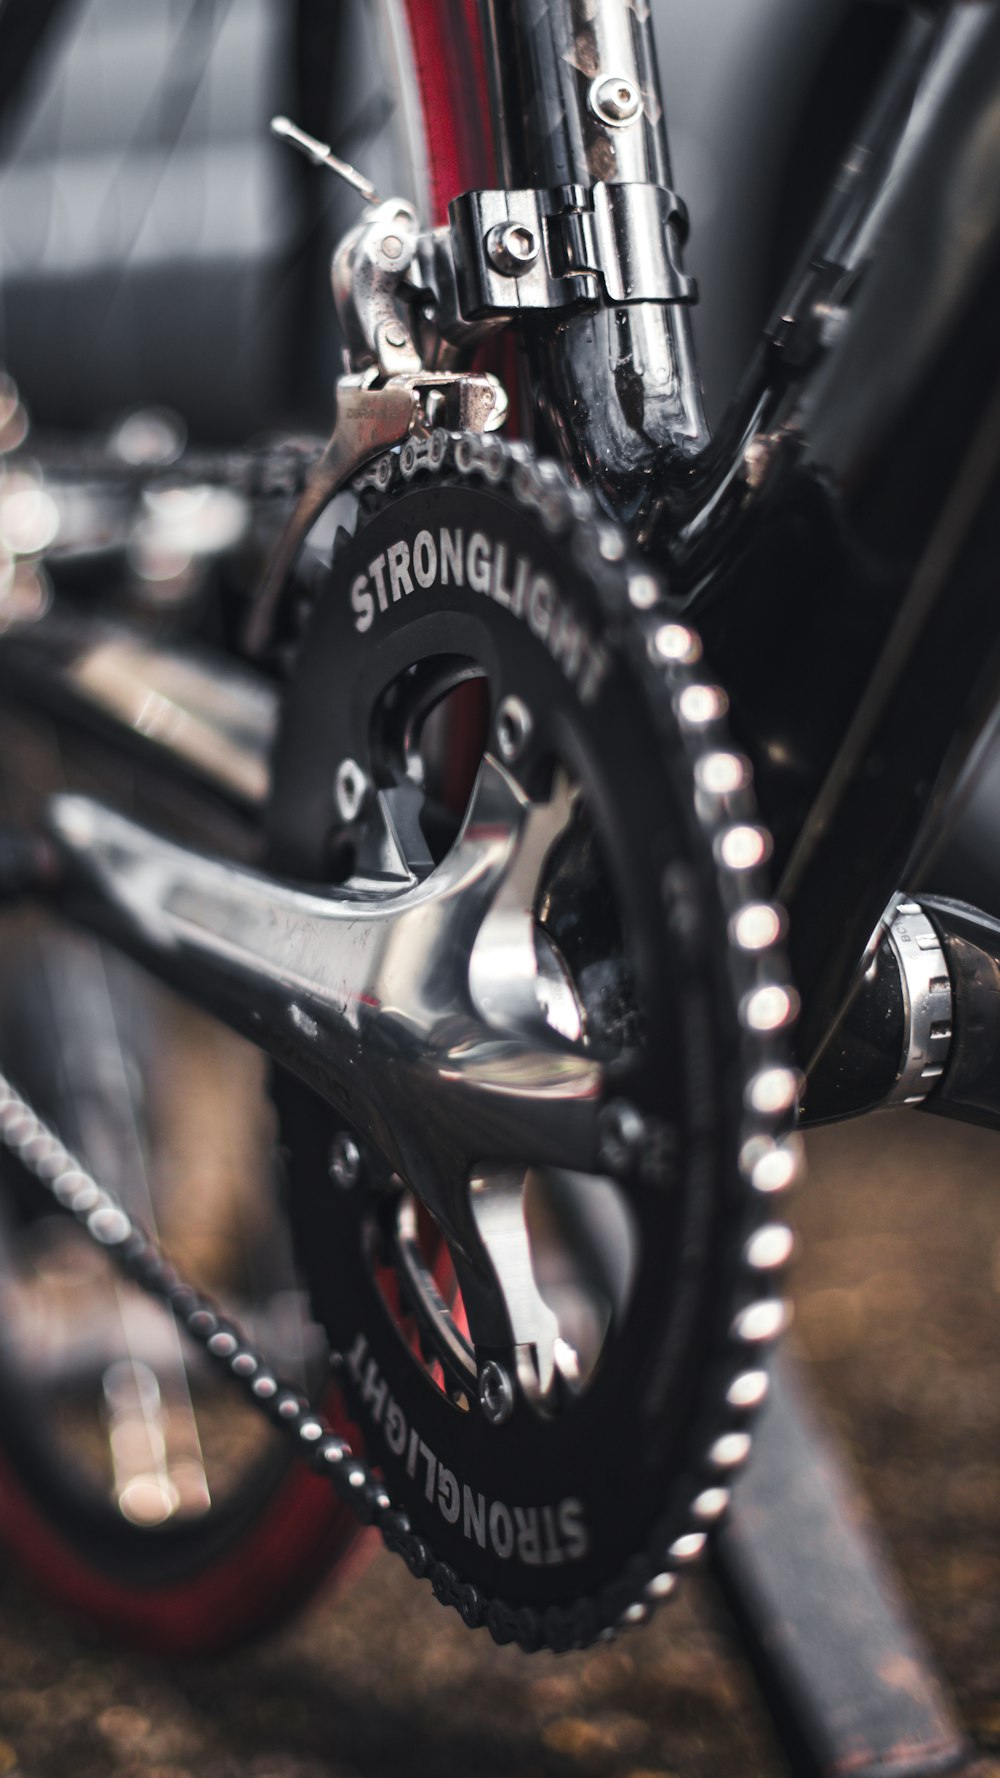 black Stronglite bicycle sprocket